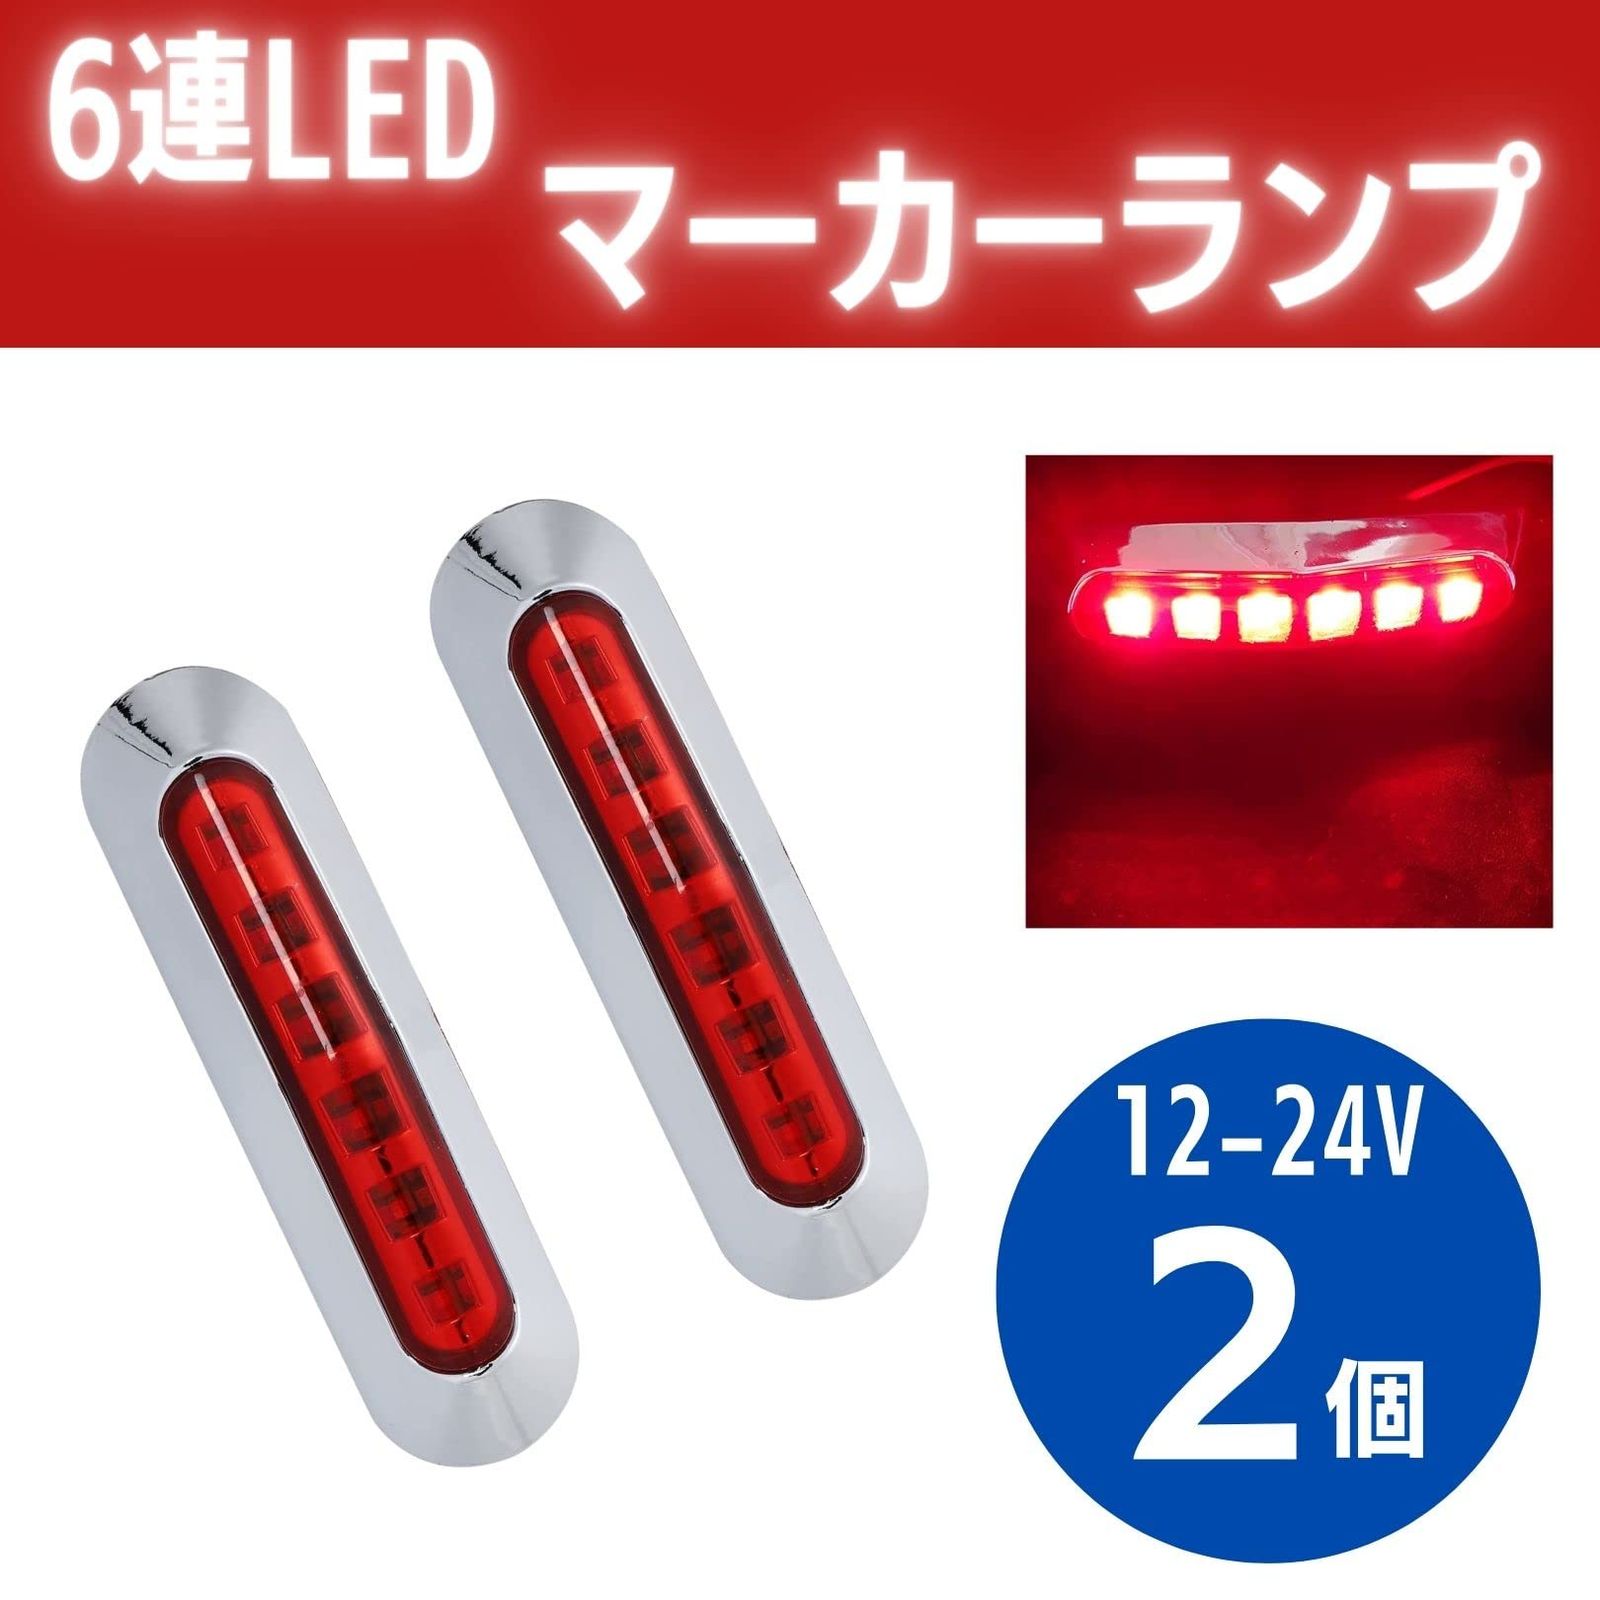 マーカーランプ 赤色 LED 12V-24V トラック サイド ライト 路肩灯 6連 発光 メッキカバー付き 小型 中型 サイズ カラーレンズ 2本  セット (レッド) [レッド] - メルカリ